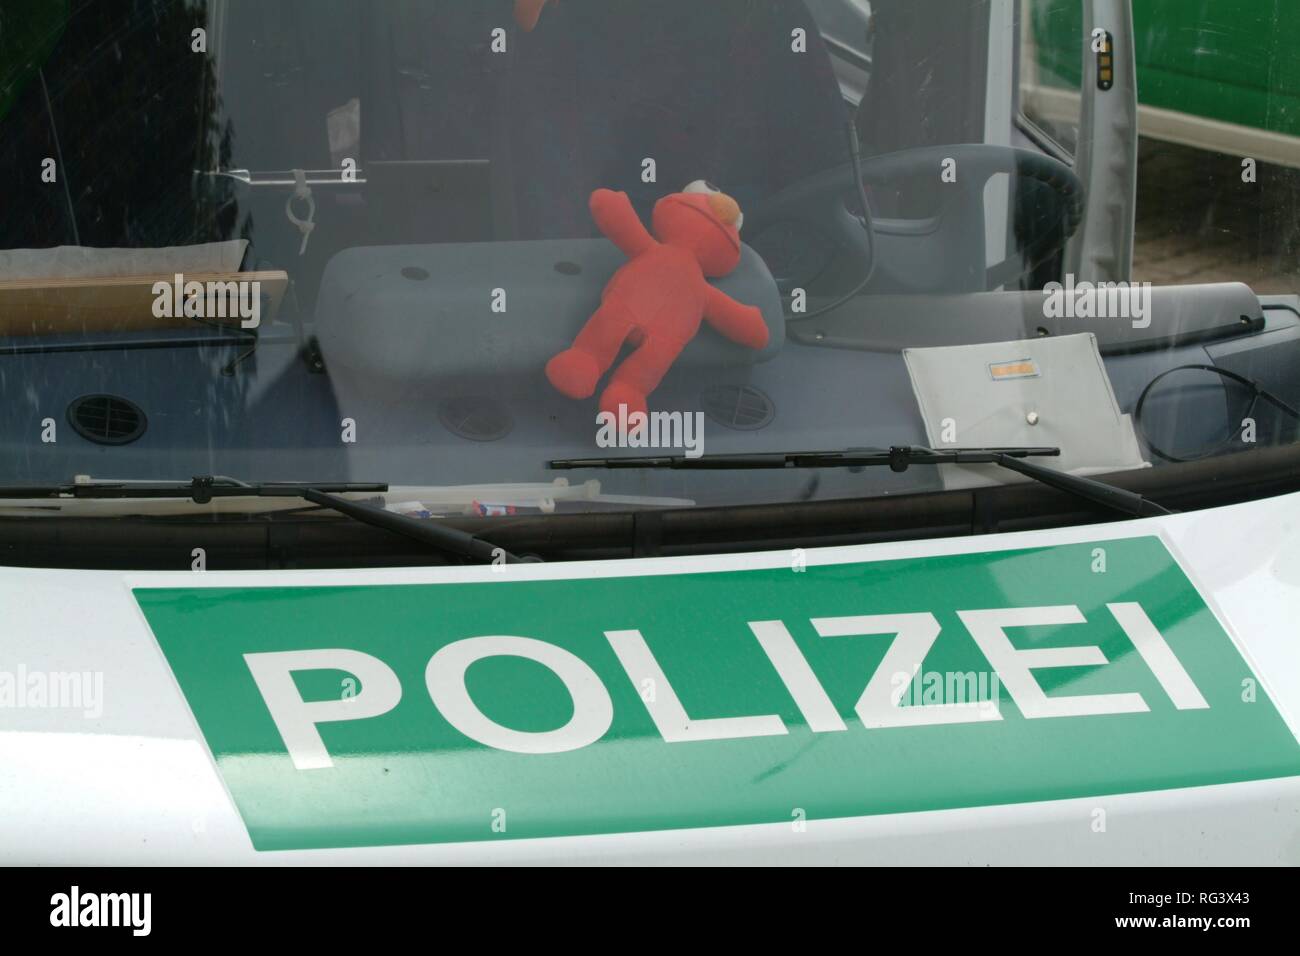 DEU, Germania : antisommossa unità di polizia, formazione in uno scenario realistico di una dimostrazione con i manifestanti violenti. Foto Stock